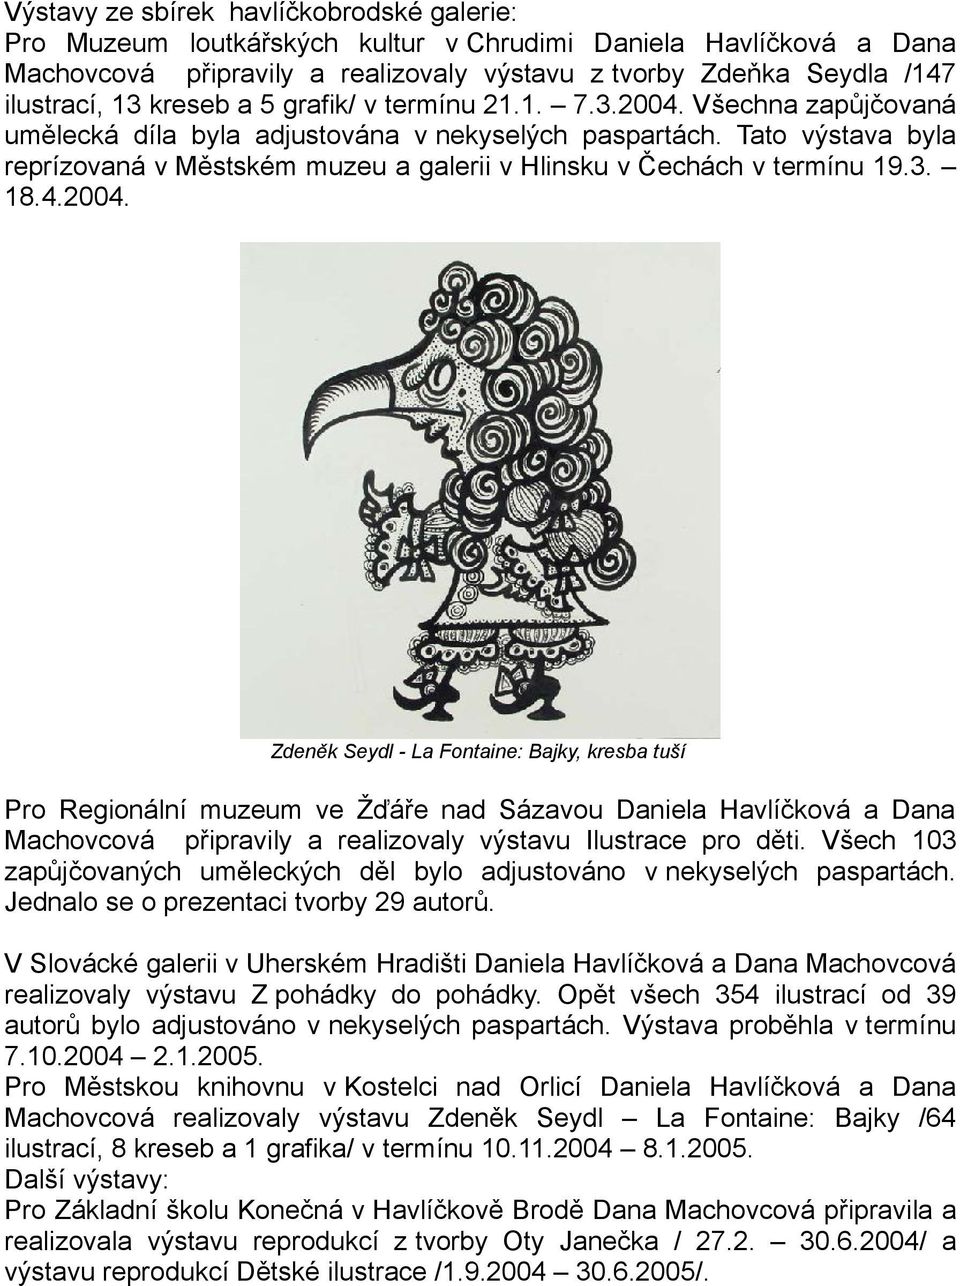 Tato výstava byla reprízovaná v Městském muzeu a galerii v Hlinsku v Čechách v termínu 19.3. 18.4.2004.